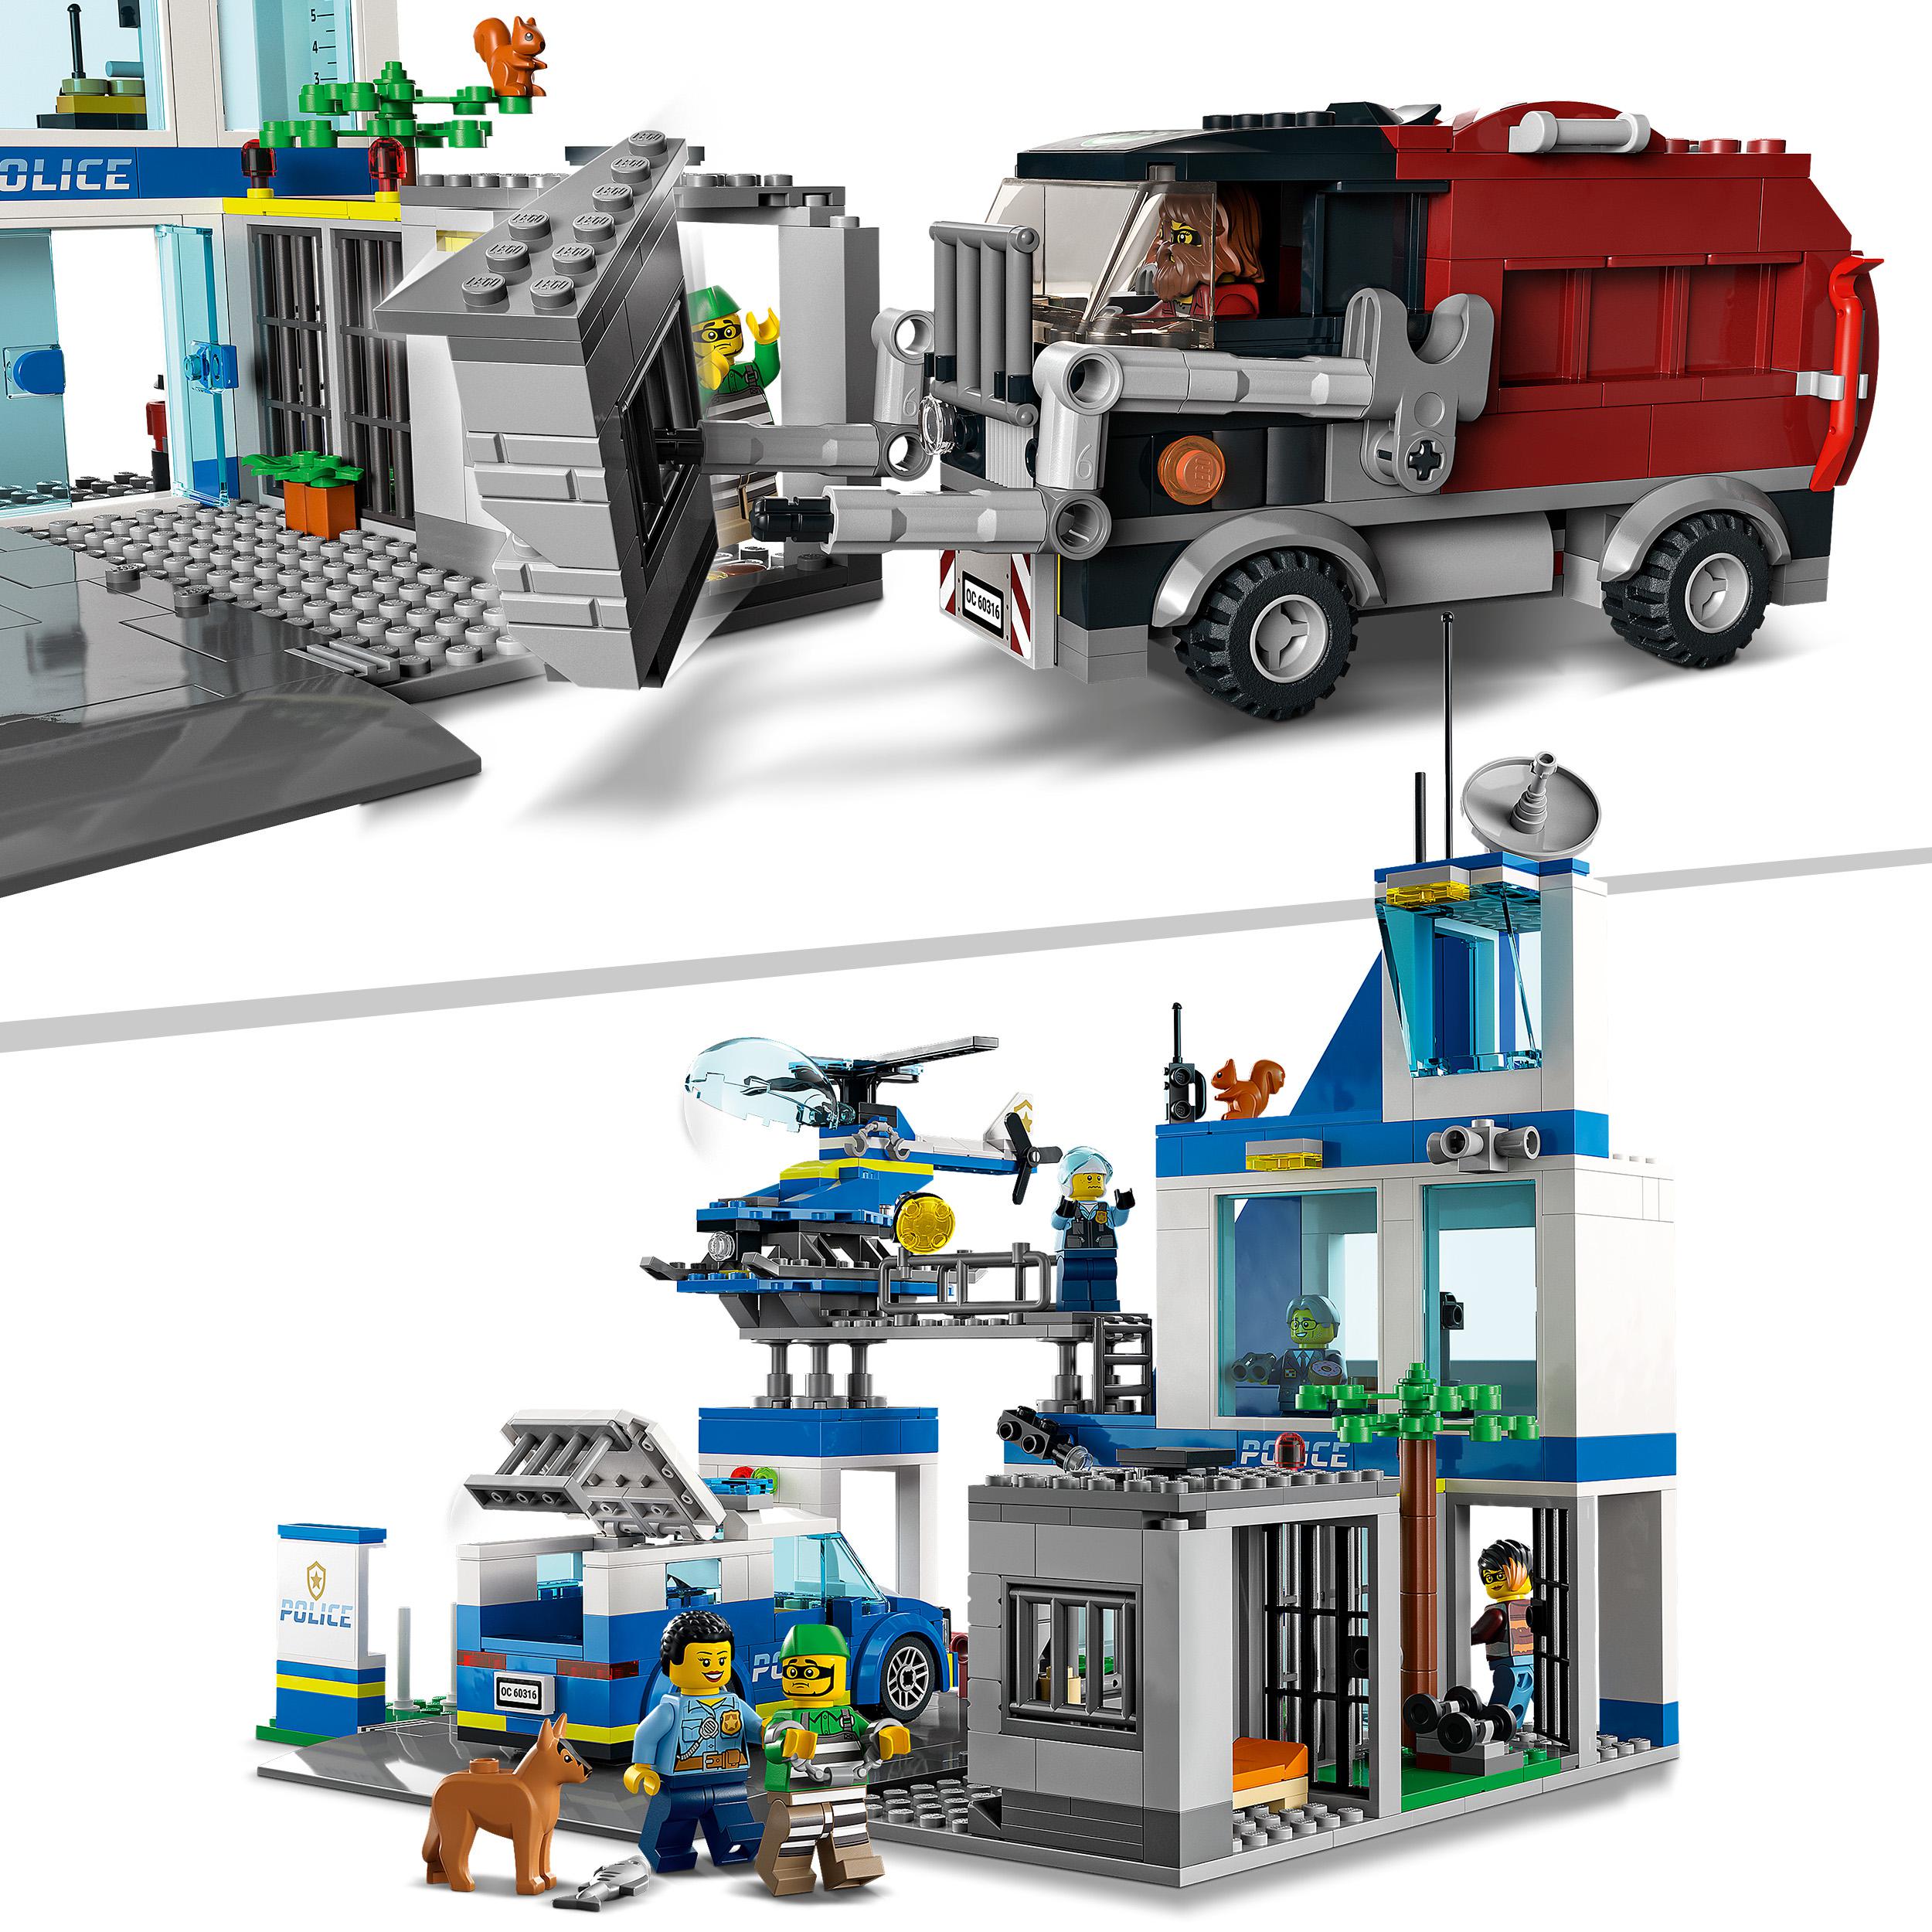 LEGO City Police Stazione di Polizia, con Camion della Spazzatura ed Elicottero 60316, , large